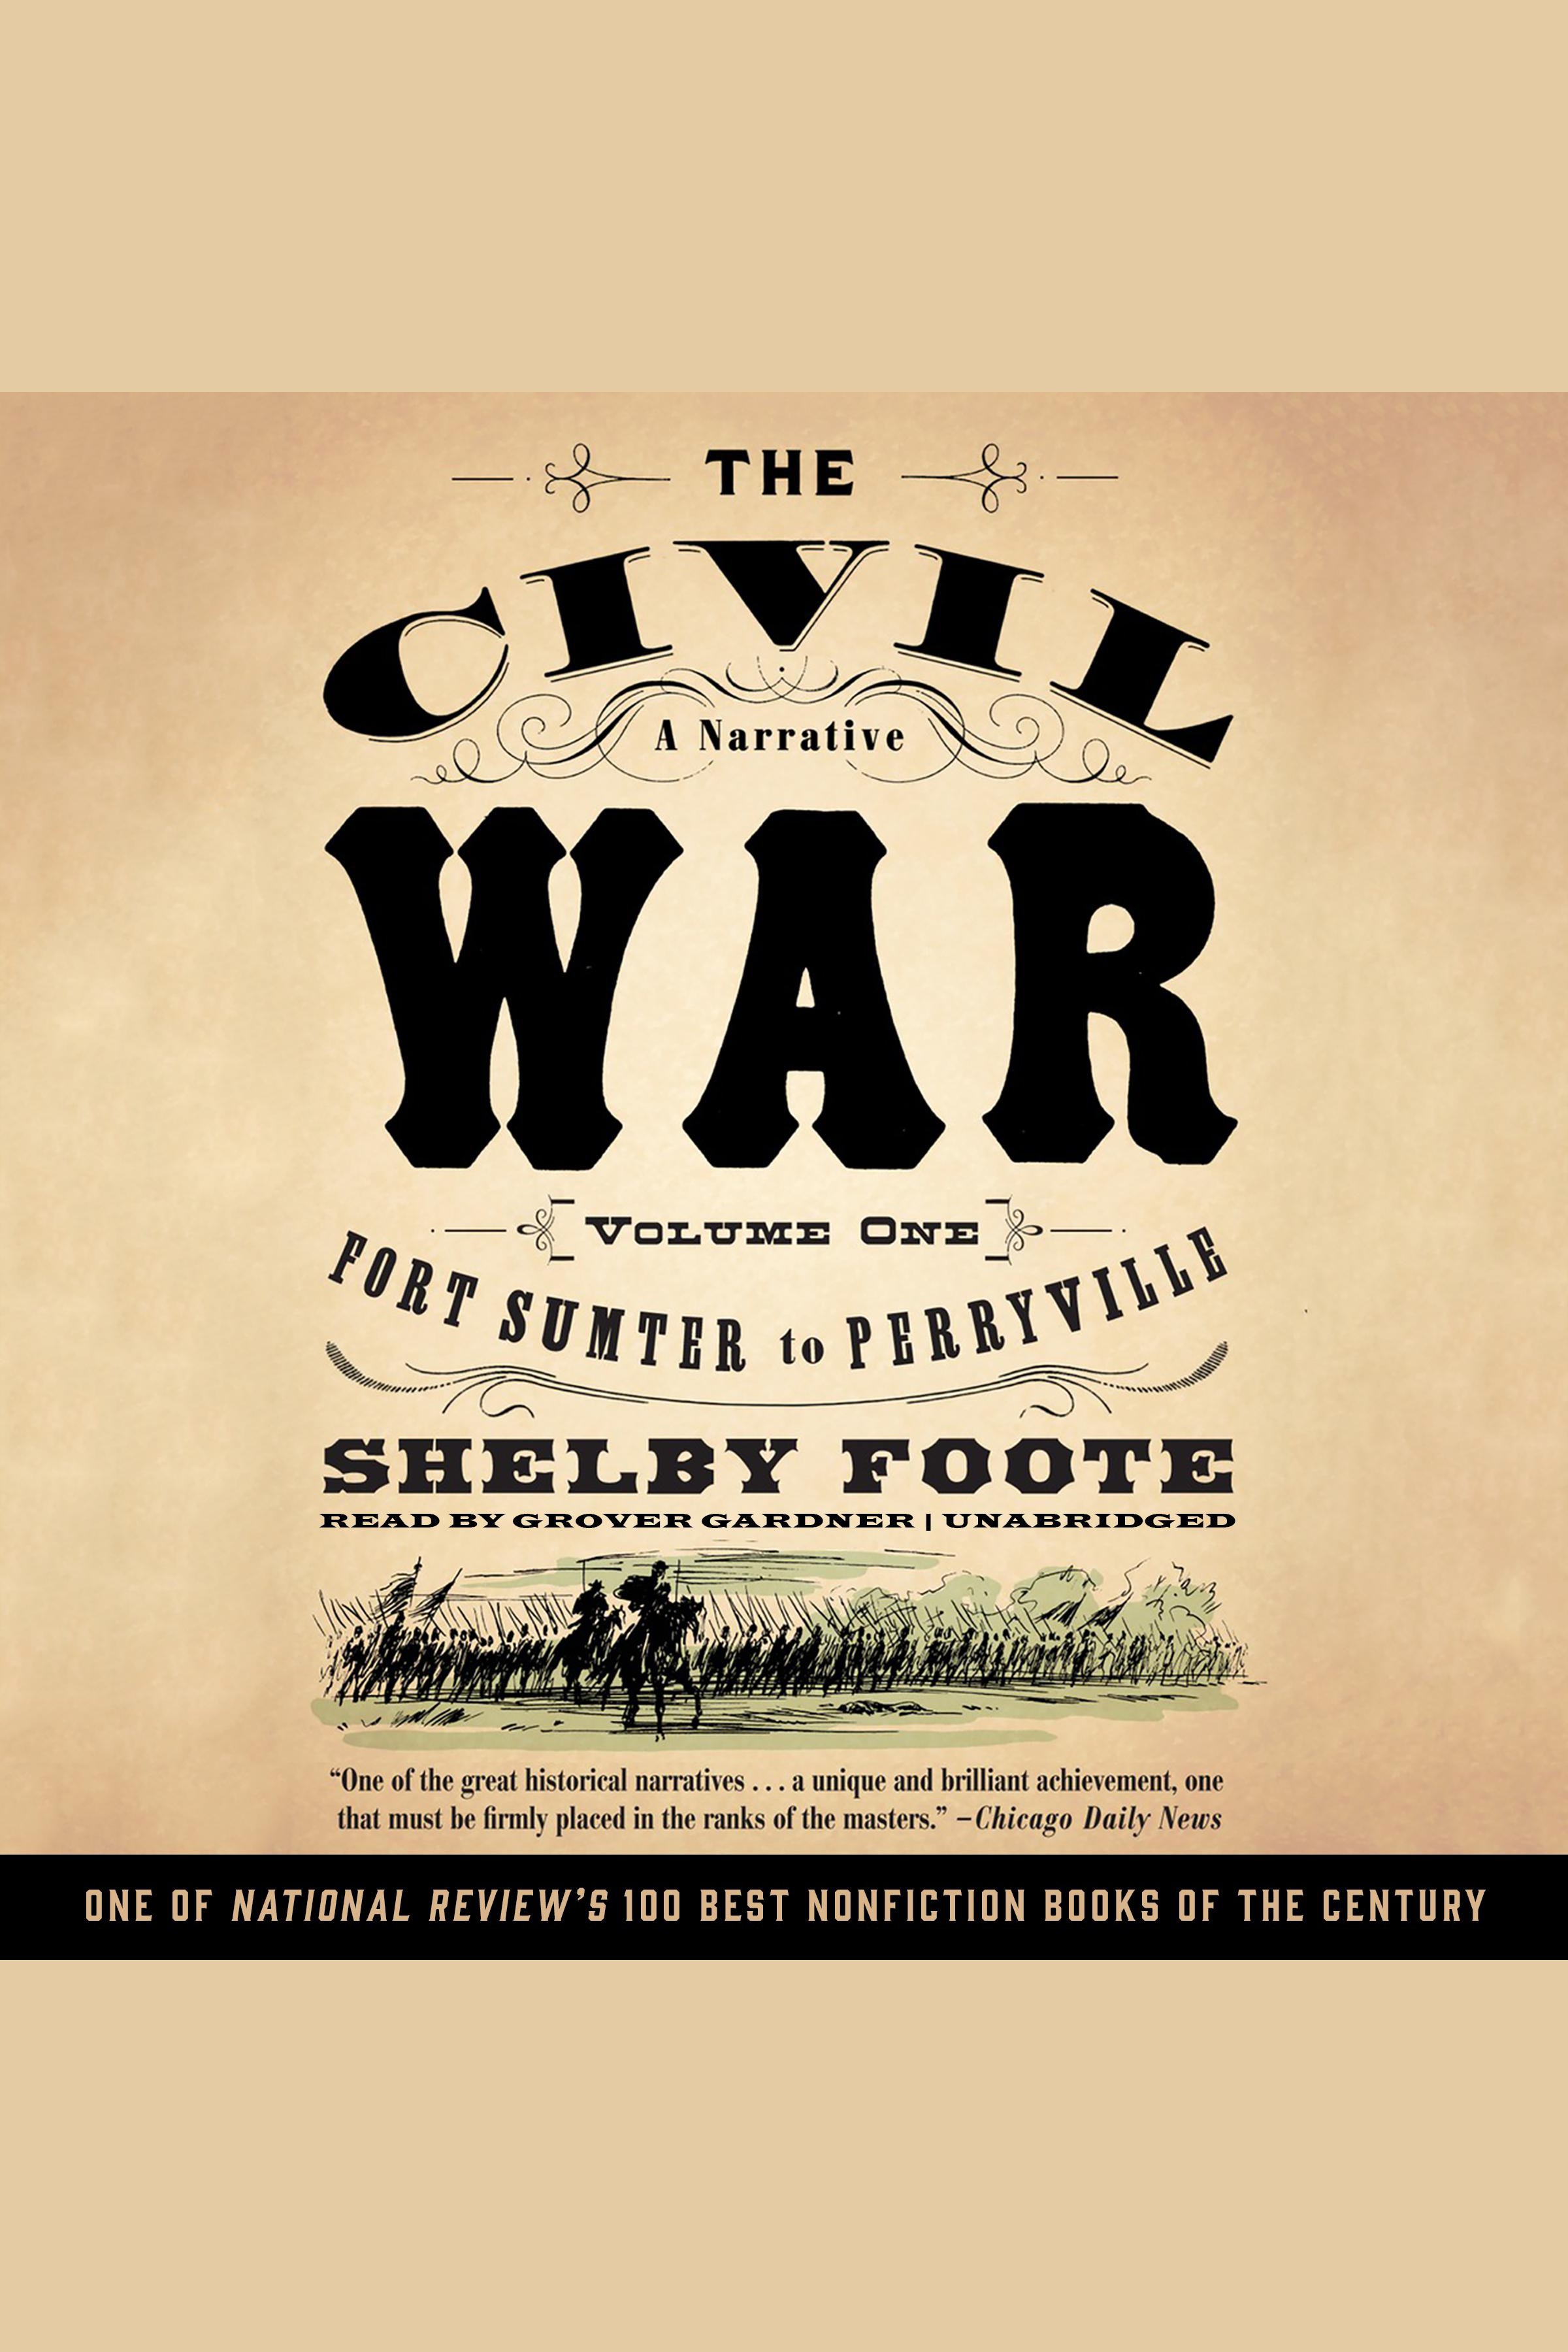 The Civil War: A Narrative, Vol. 1 cover image